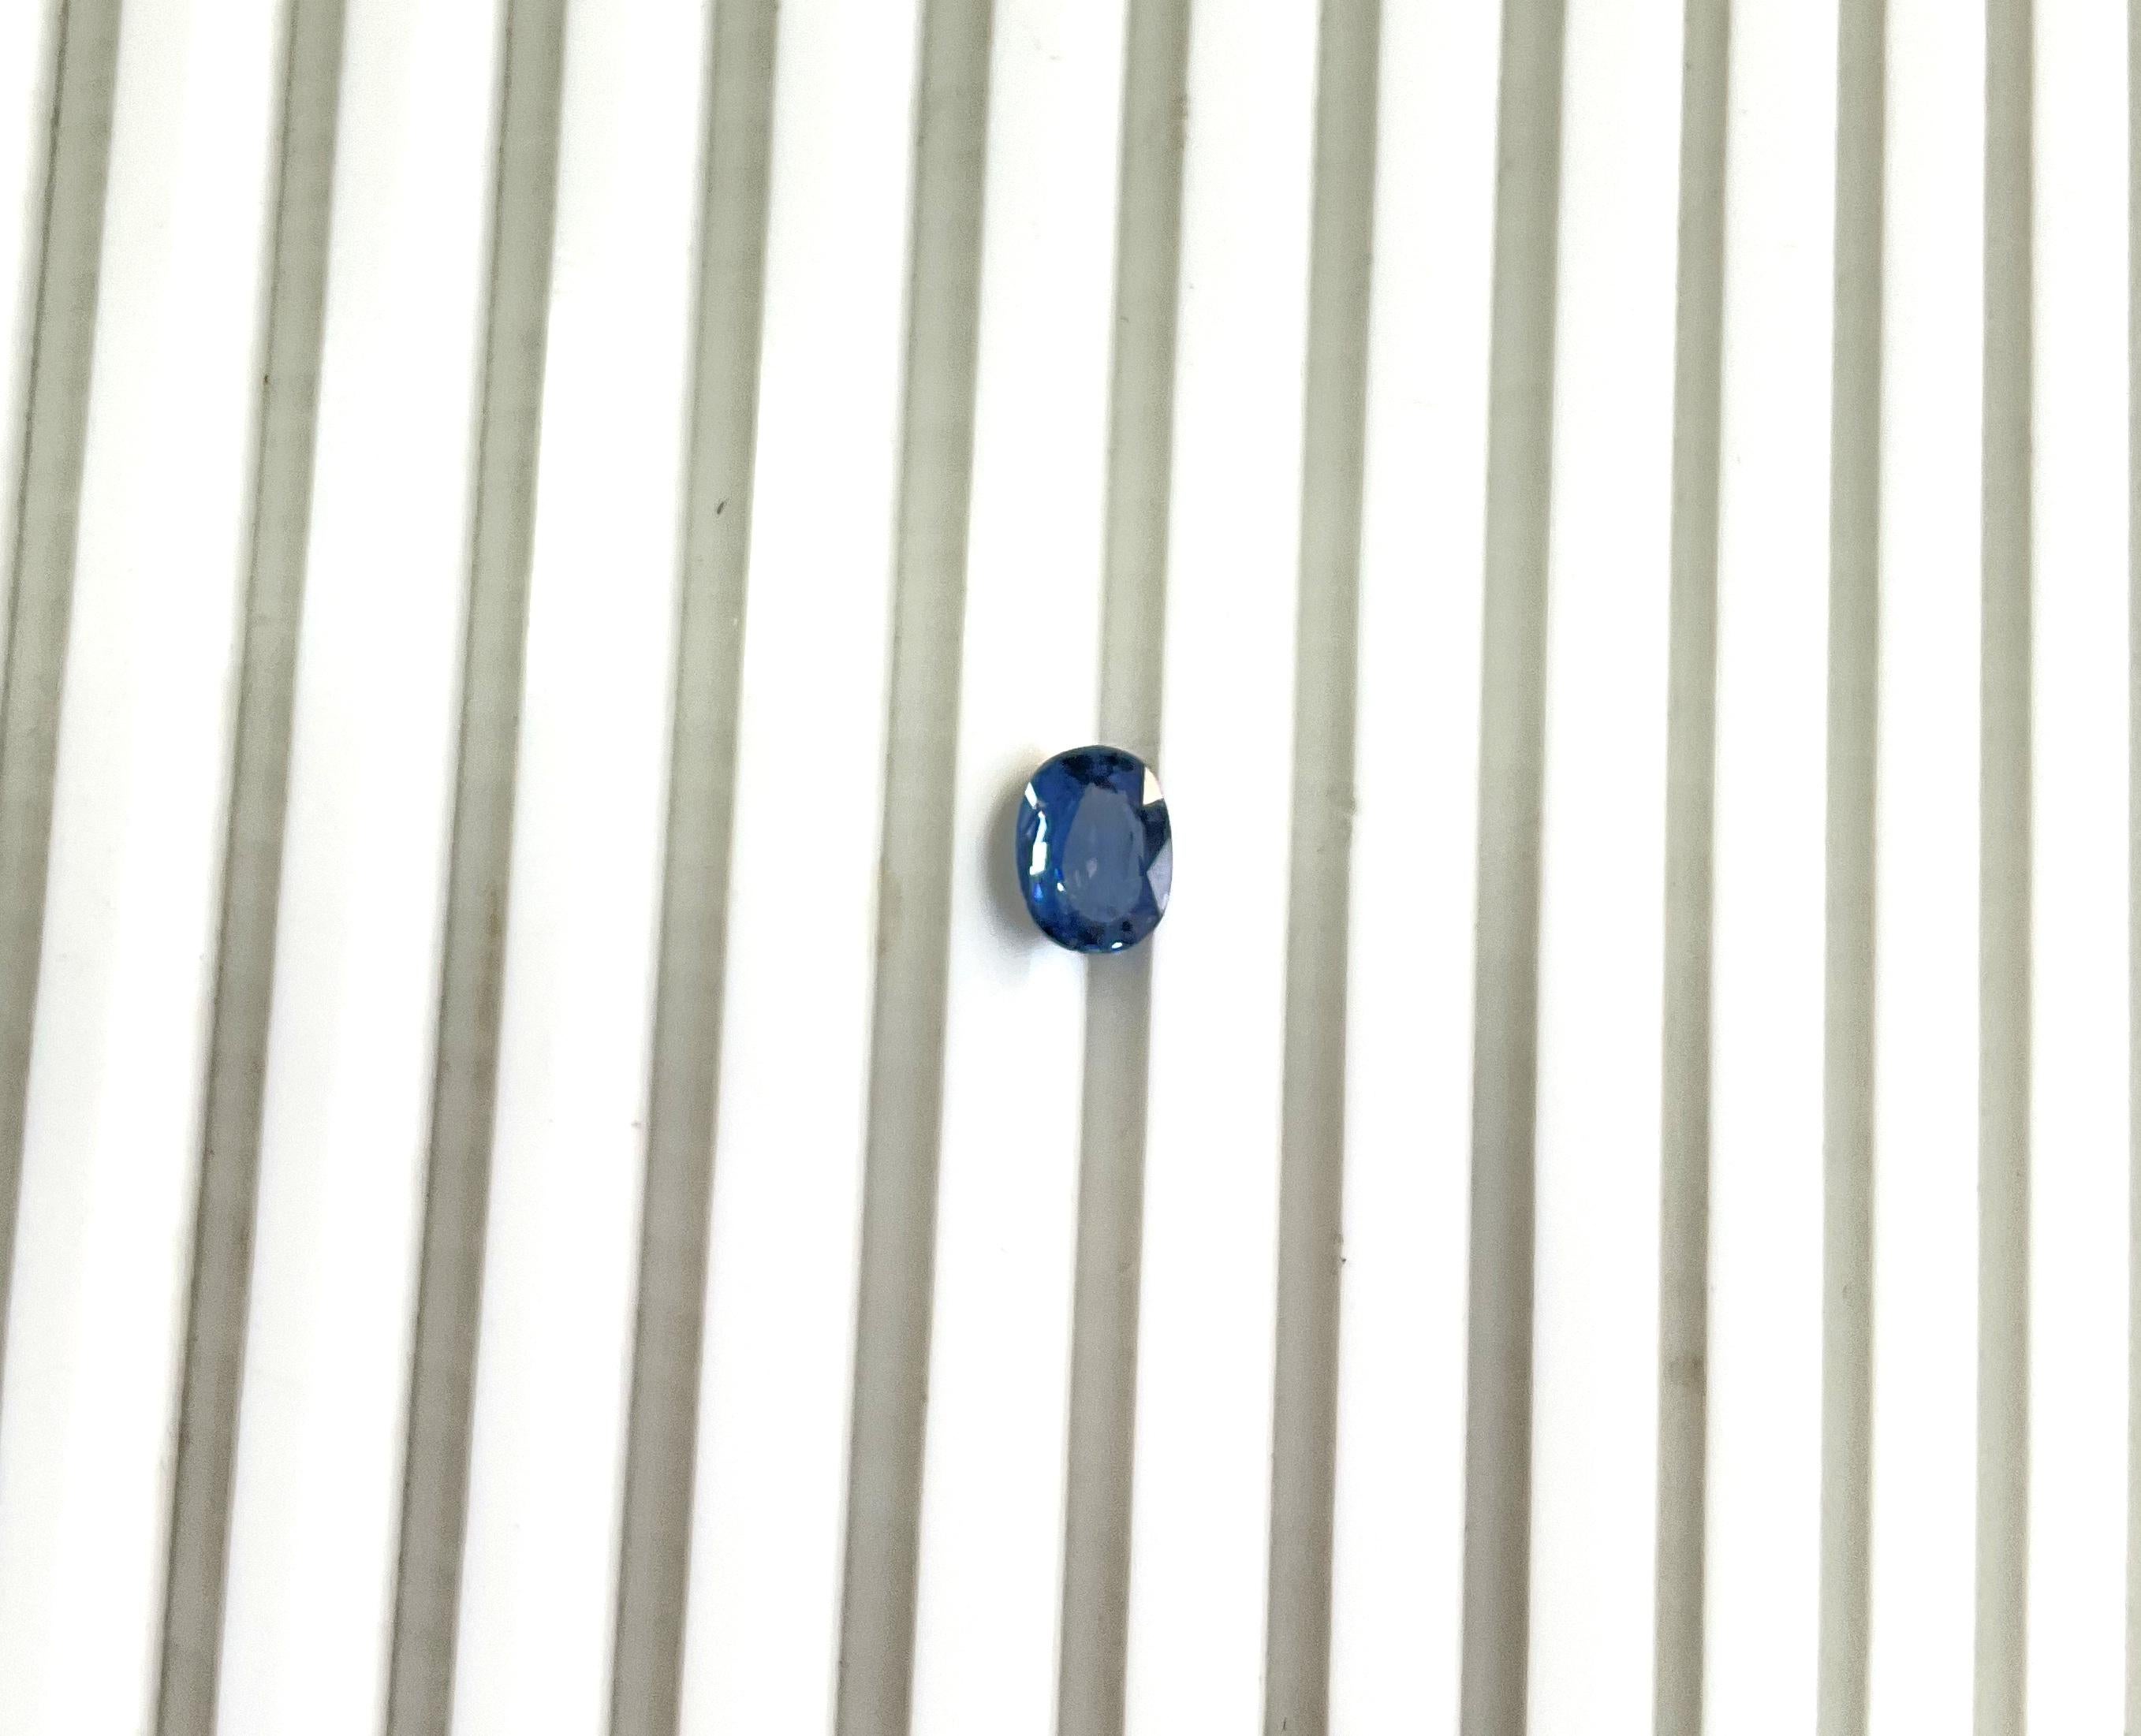 Tanzania Blue Spinel Oval Faceted Natural Cut Stone for Fine Jewelry (Spinelle bleue de Tanzanie, pierre naturelle taillée à facettes)
Poids - 1,64 ct
Taille - 8x6x4 mm
Forme - Ovale
Quantité - 1 pièce